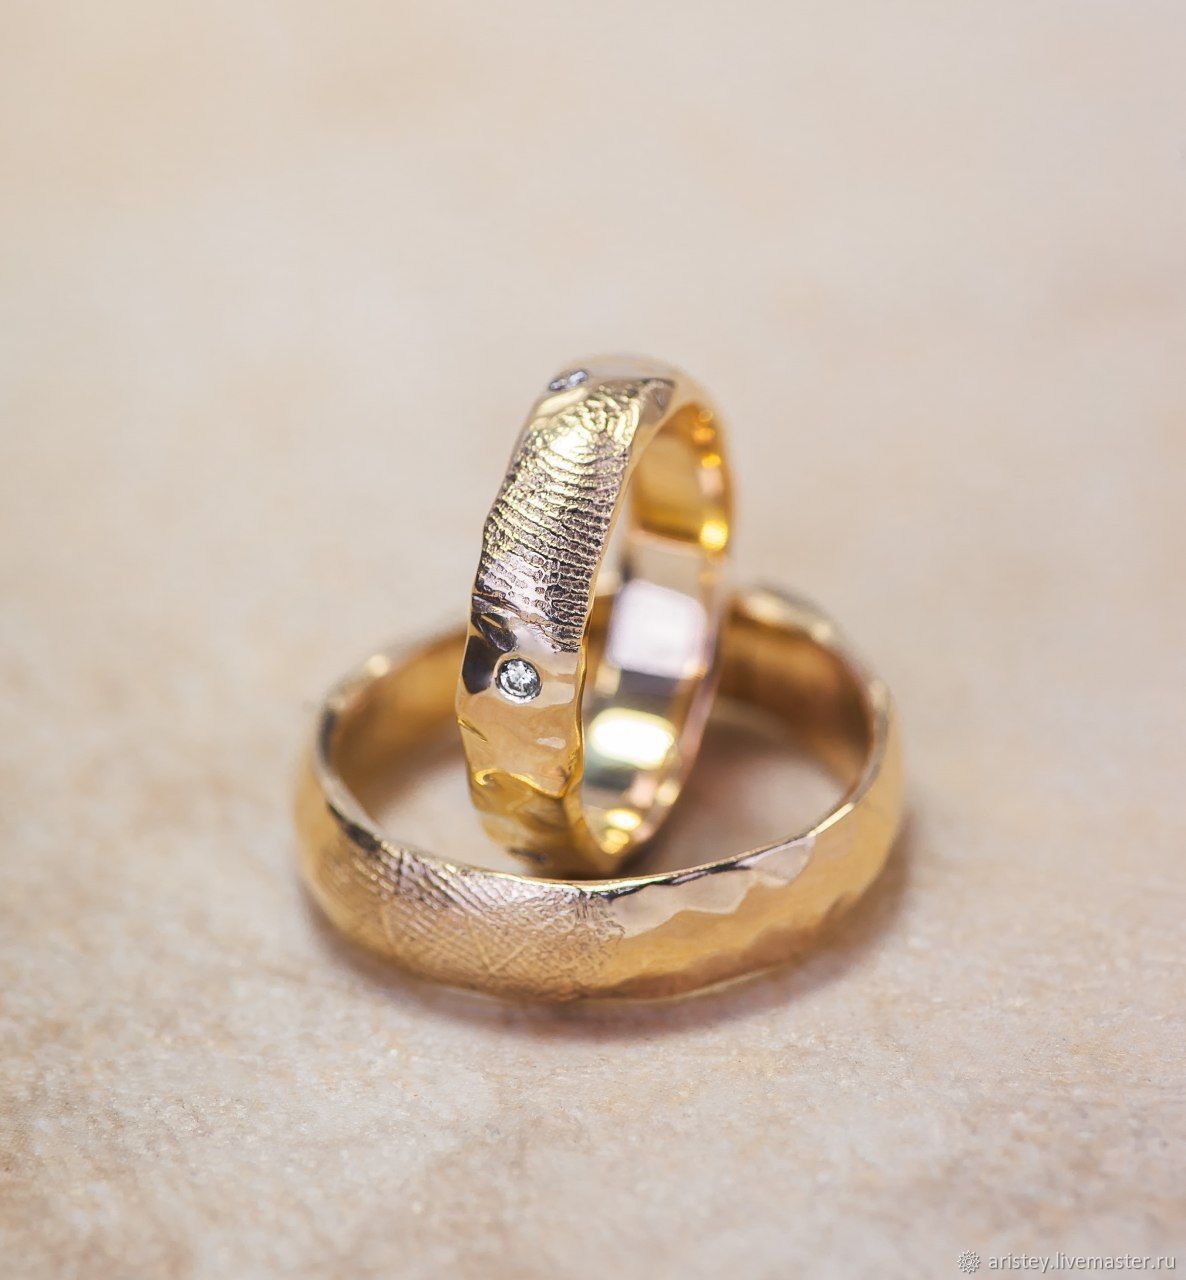 Обручальное кольцо с отпечатком пальца фото